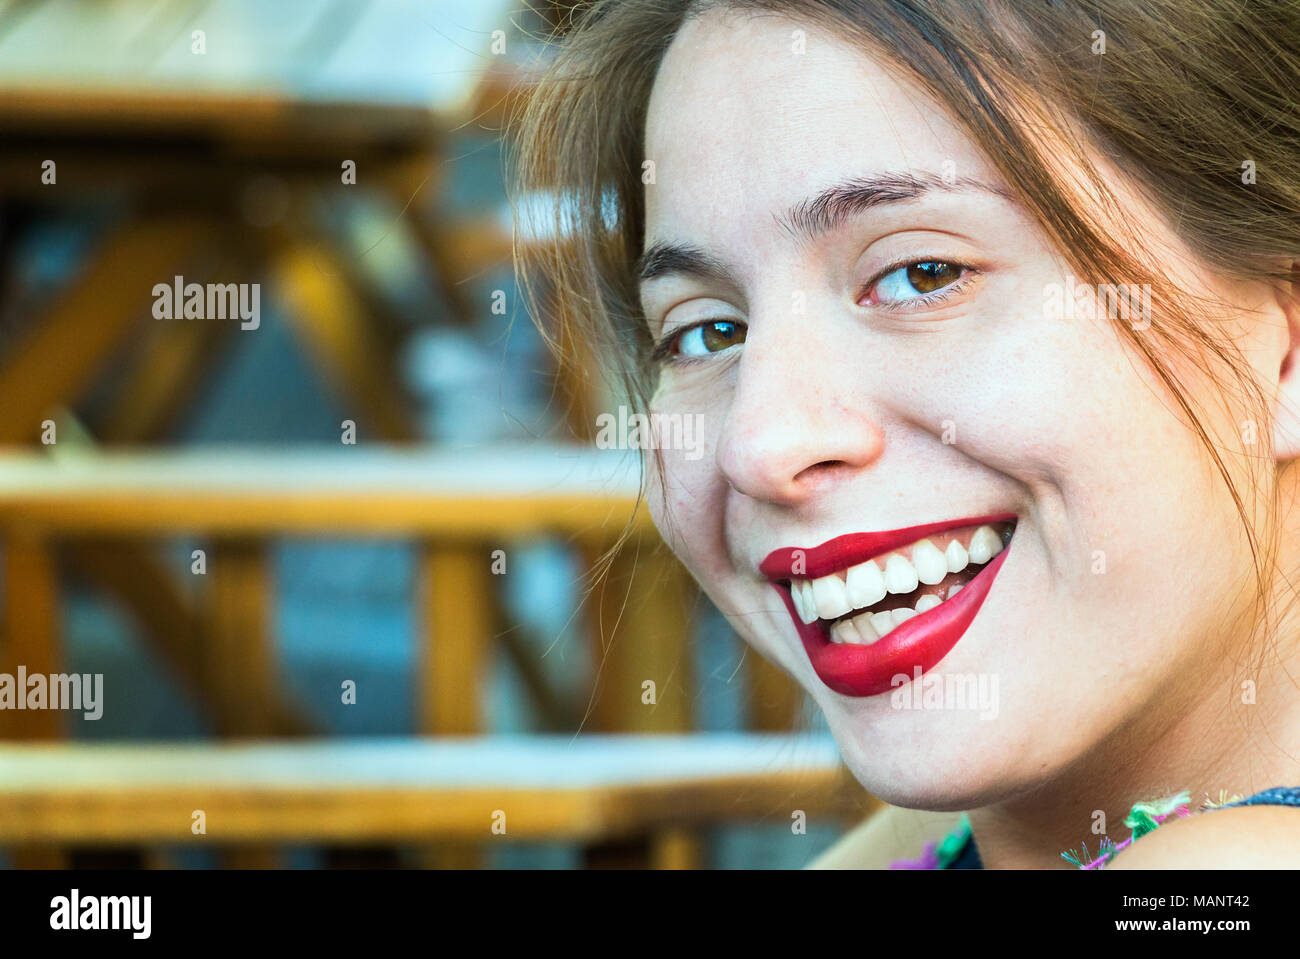 Portrait d'une jeune femme blonde, looking at camera, riant, joyeux, souriant à pleines dents. Banque D'Images